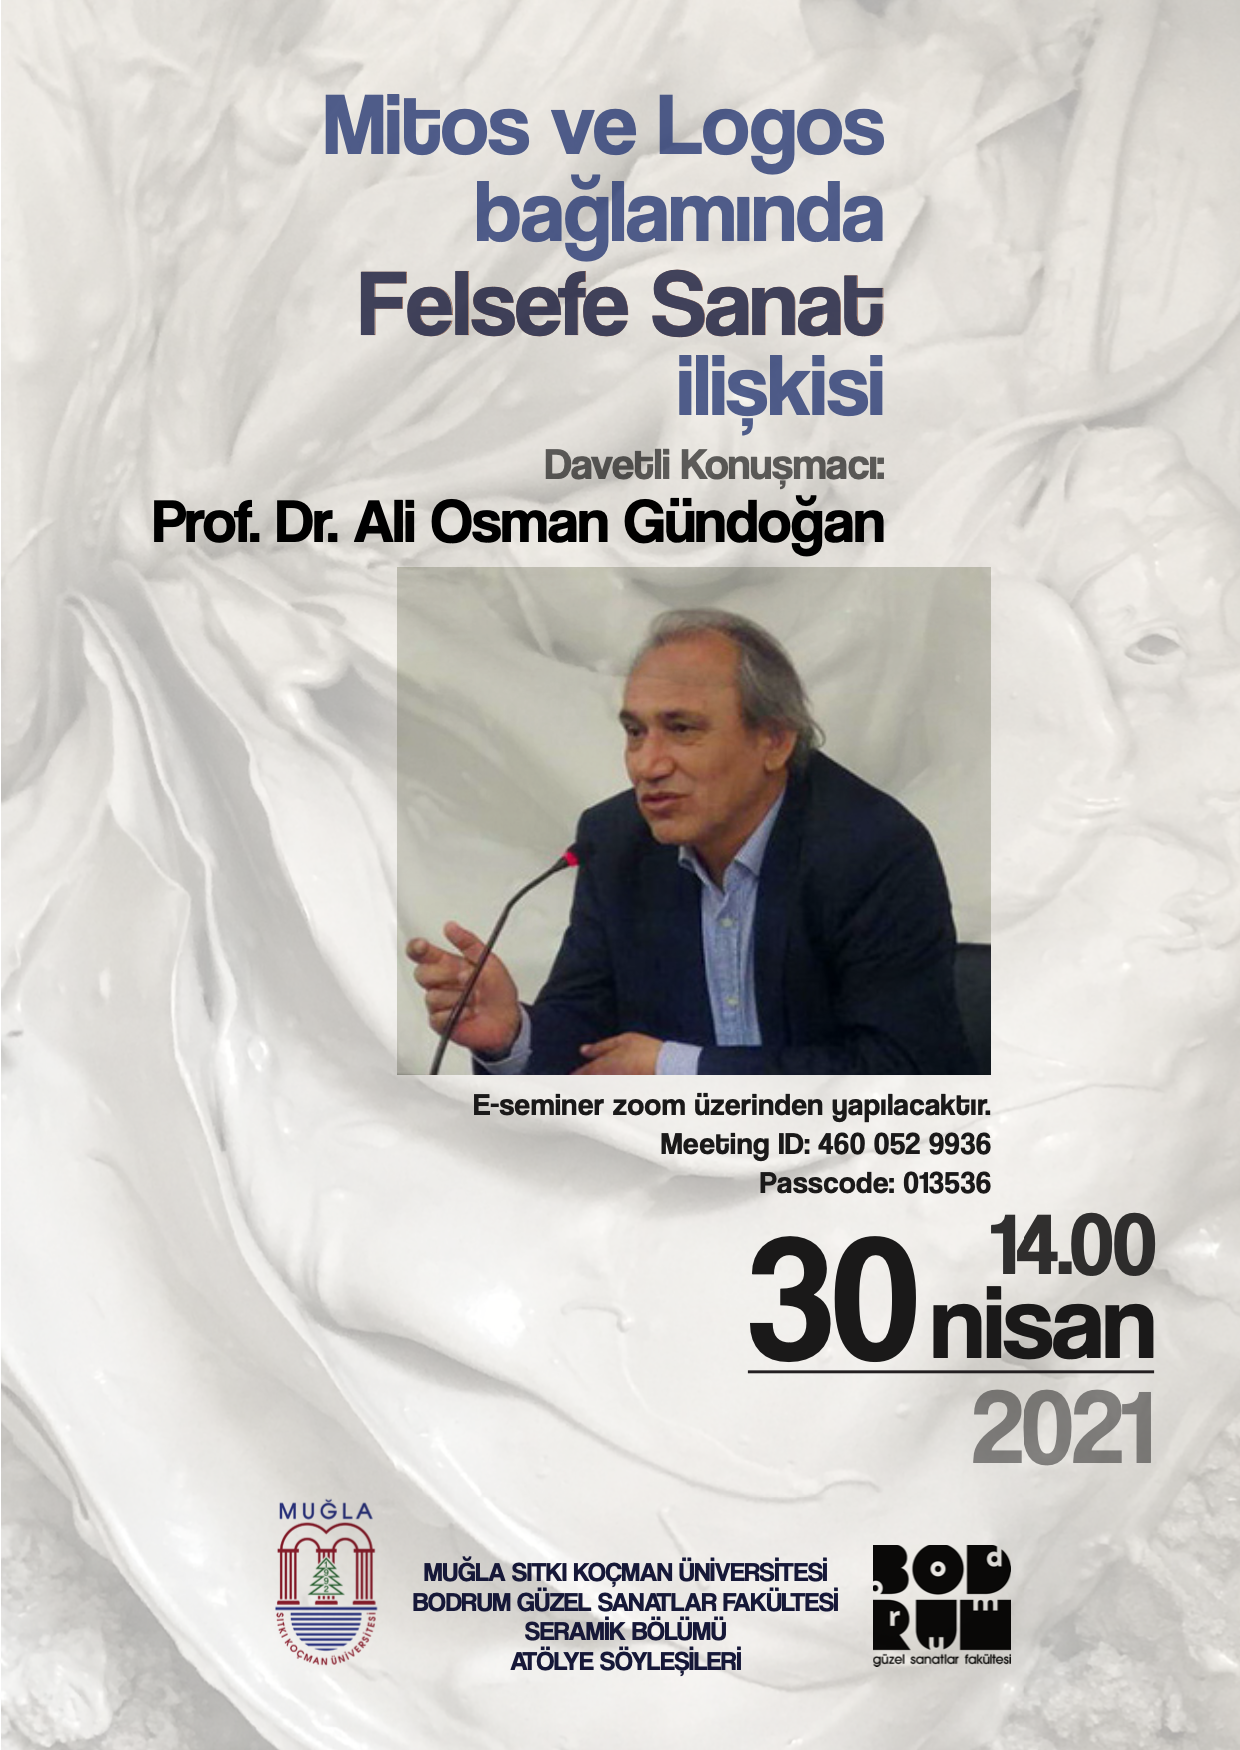 E-Seminer: Prof. Dr. Ali Osman Gündoğan "Mitos ve Logos Bağlamında Felsefe Sanat İlişkisi"